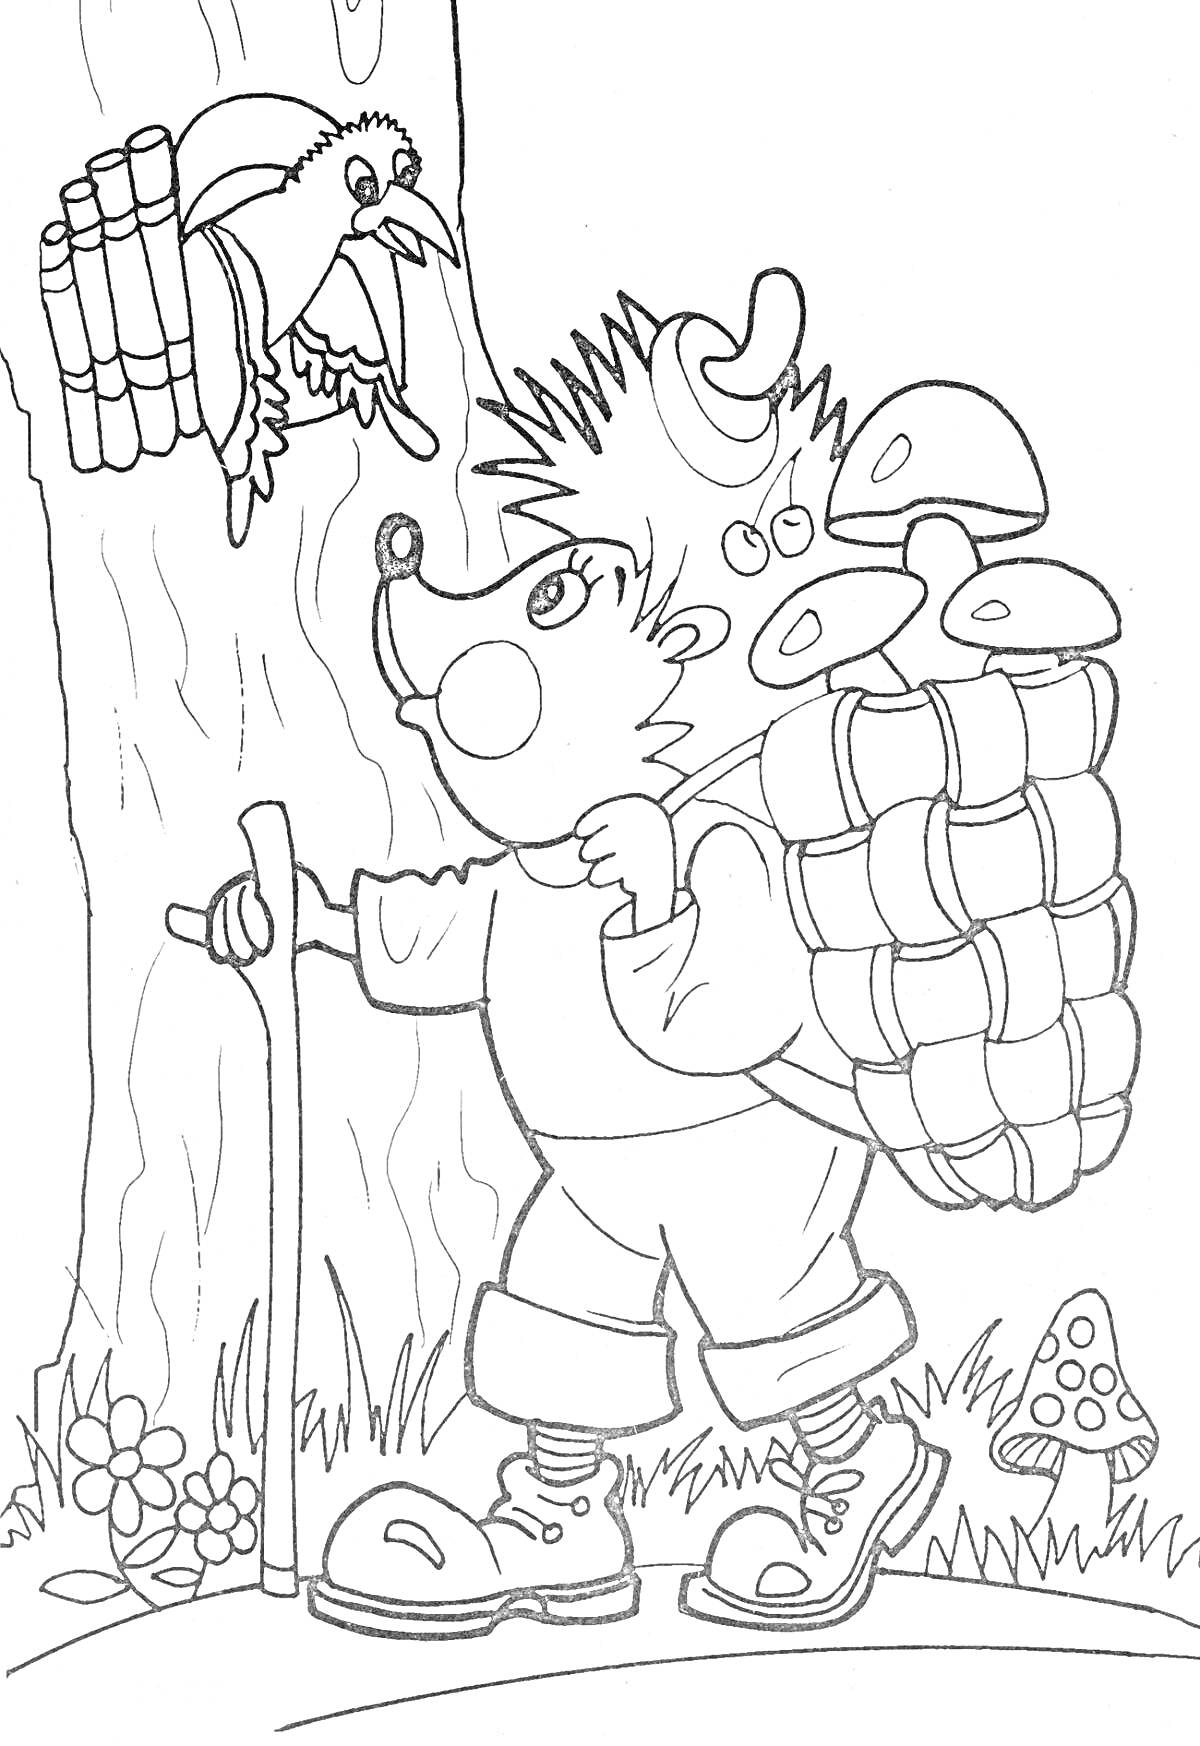 Раскраска Ежик с грибами в корзине, стоящий у дерева, разговаривает с птицей на ветке. Рядом ногами растут грибы.